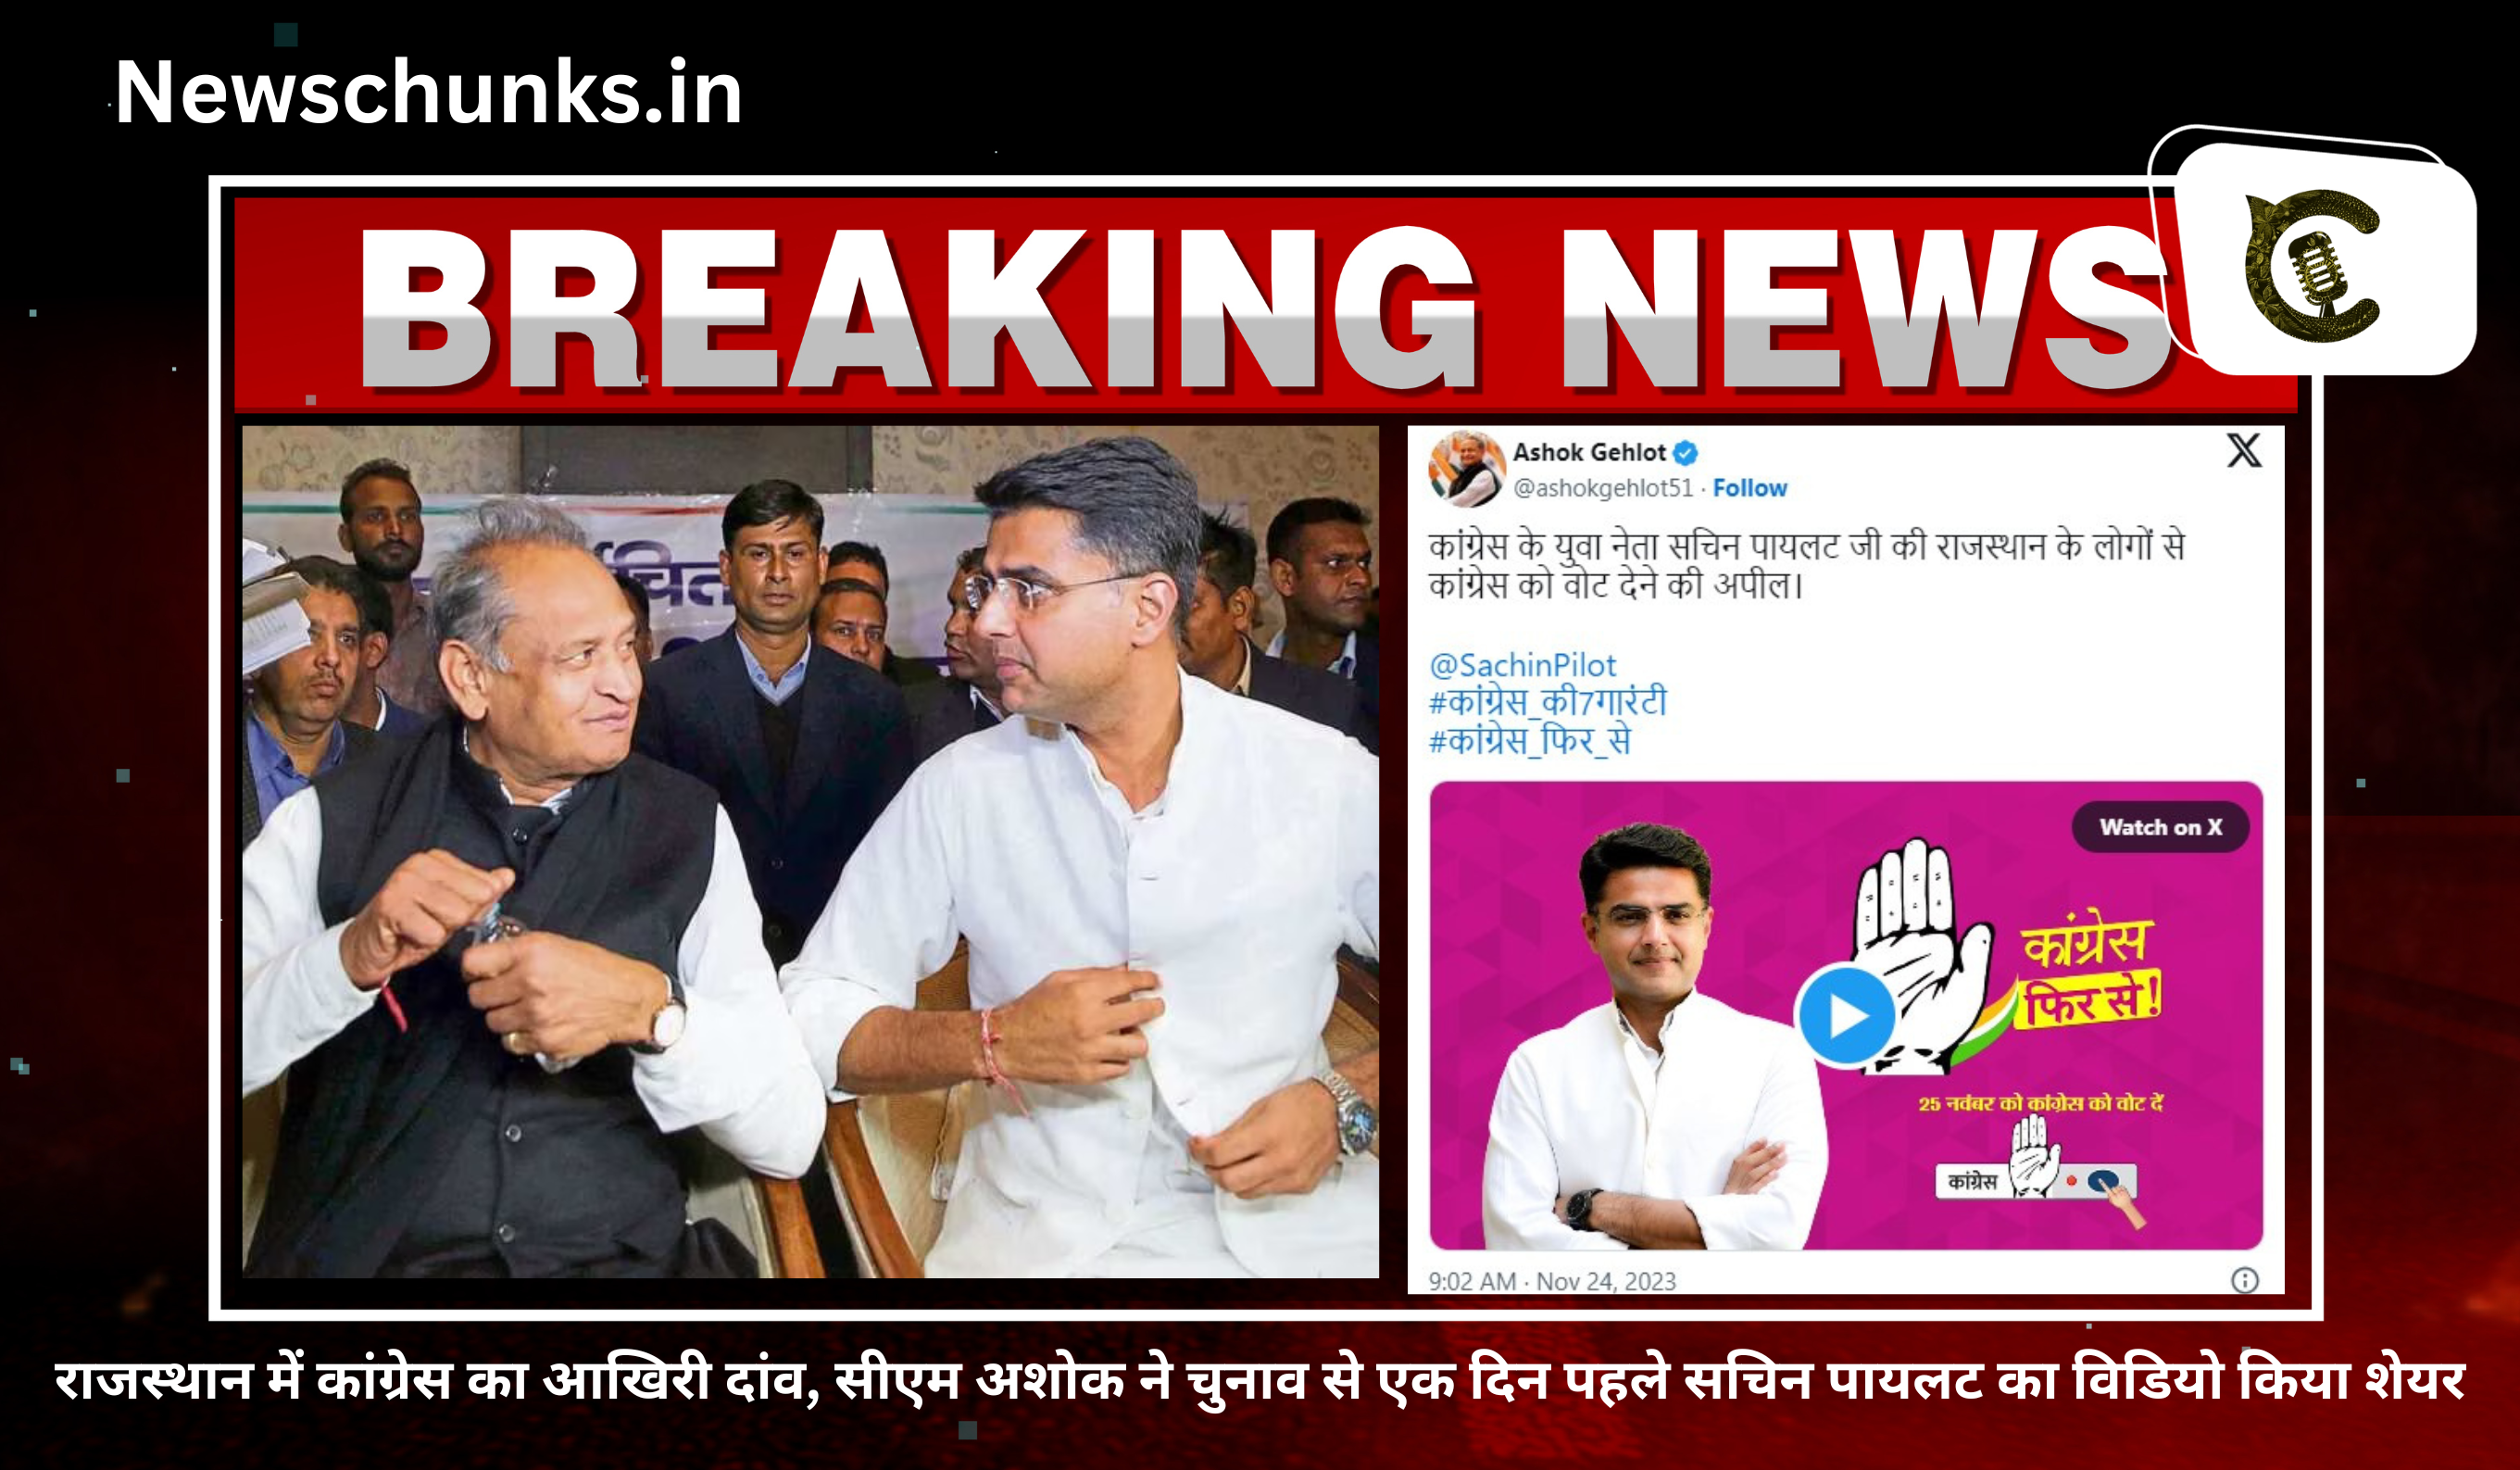 rajasthan me congress ka aakhiri danv: राजस्थान में कांग्रेस का आखिरी दांव, सीएम अशोक ने चुनाव से एक दिन पहले सचिन पायलट का विडियो किया शेयर